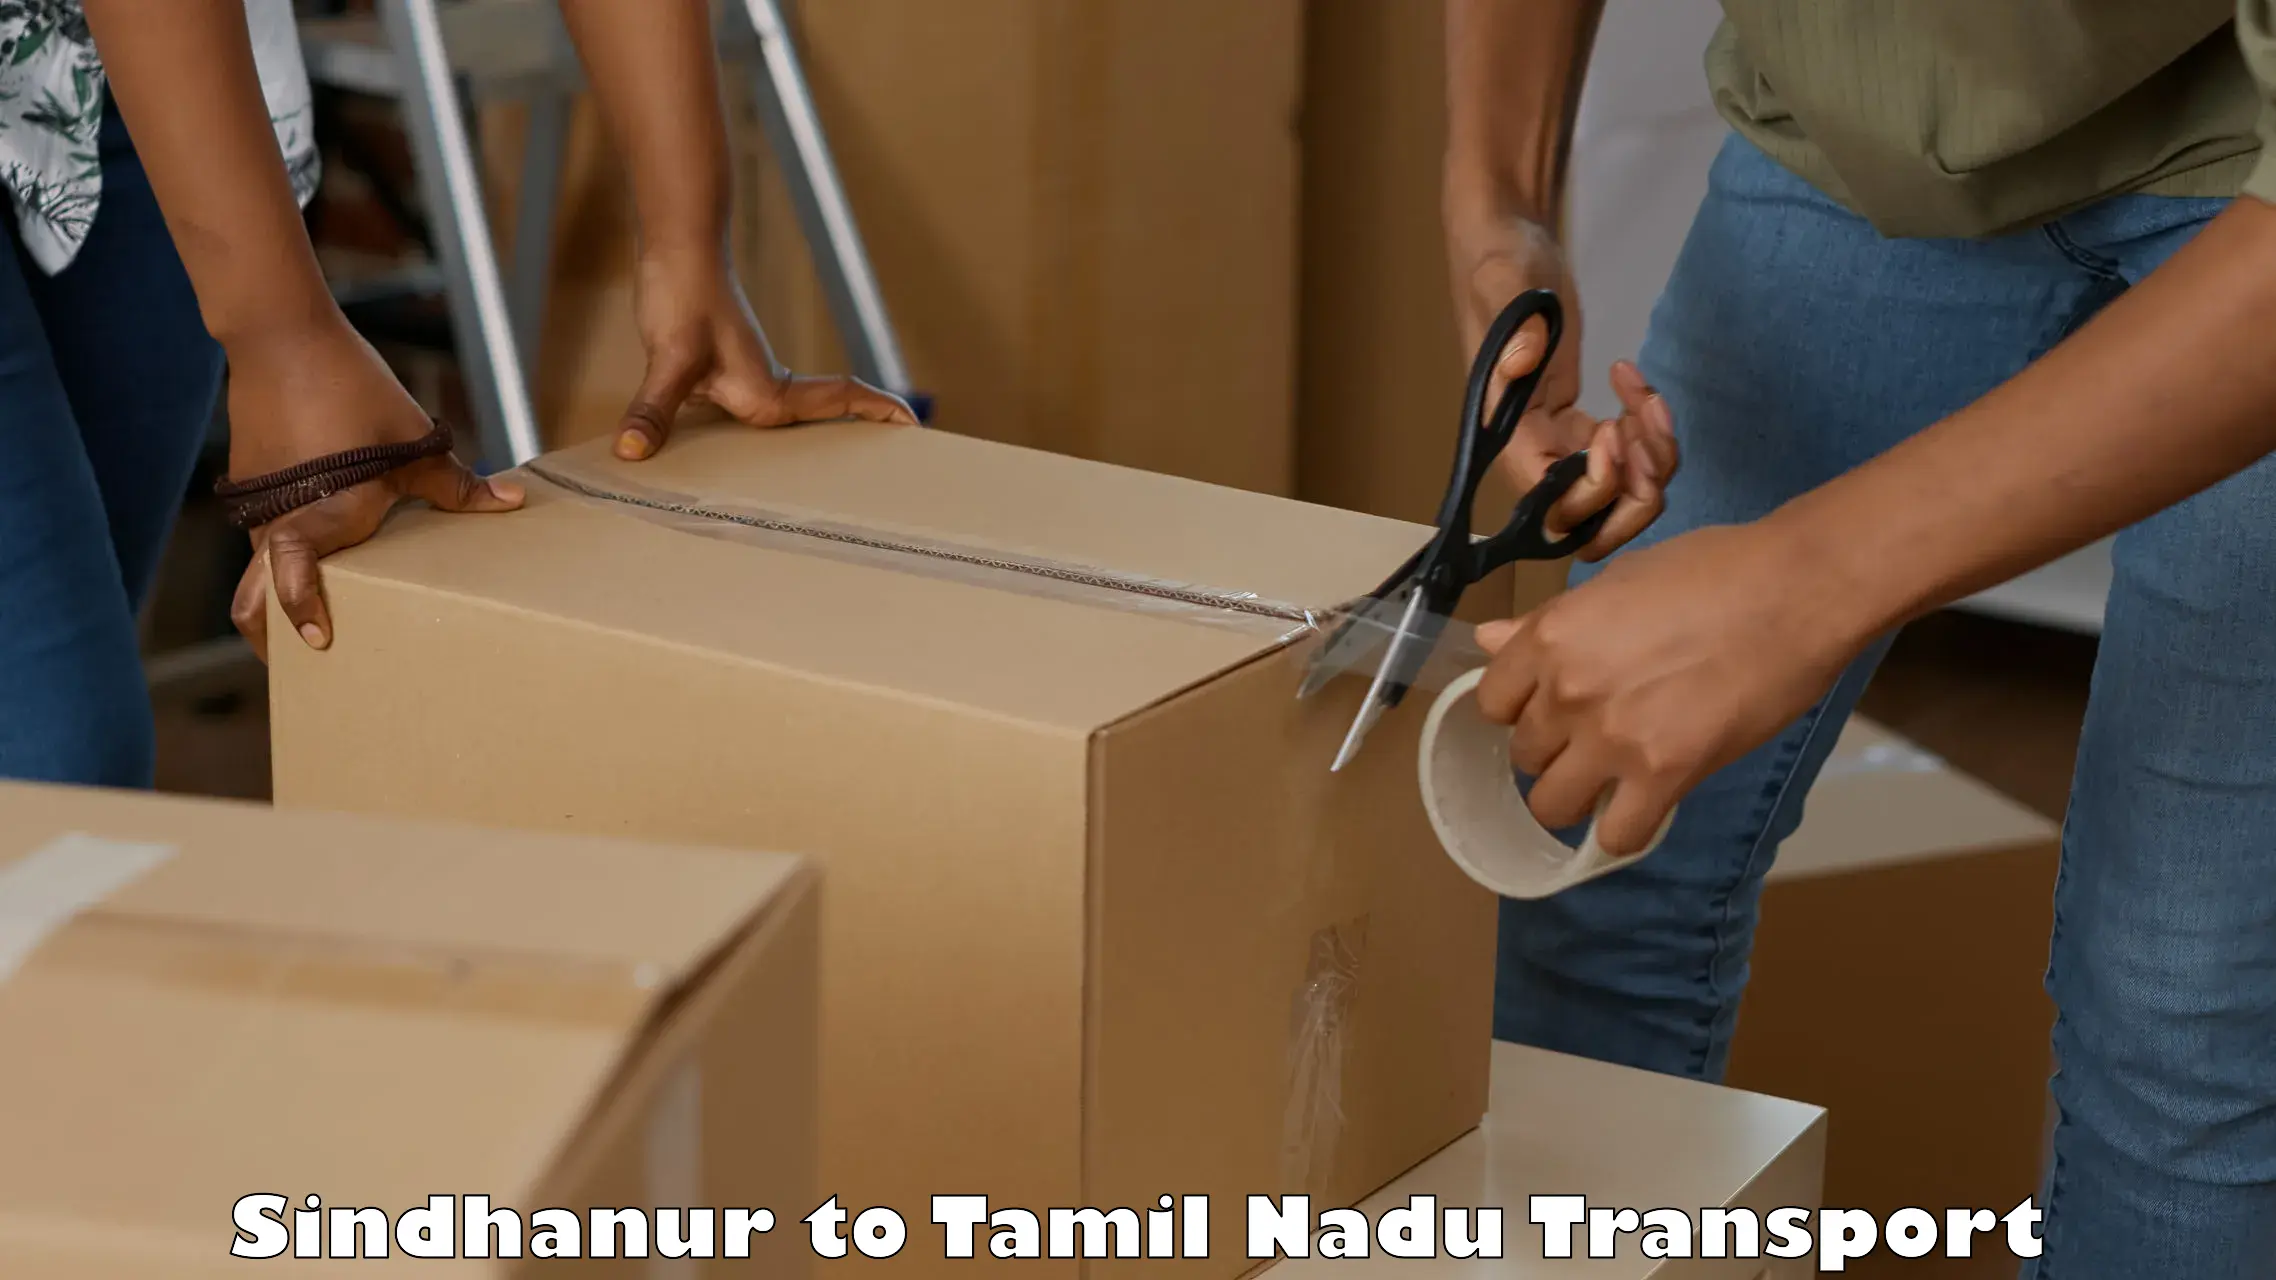 Furniture transport service Sindhanur to Namakkal